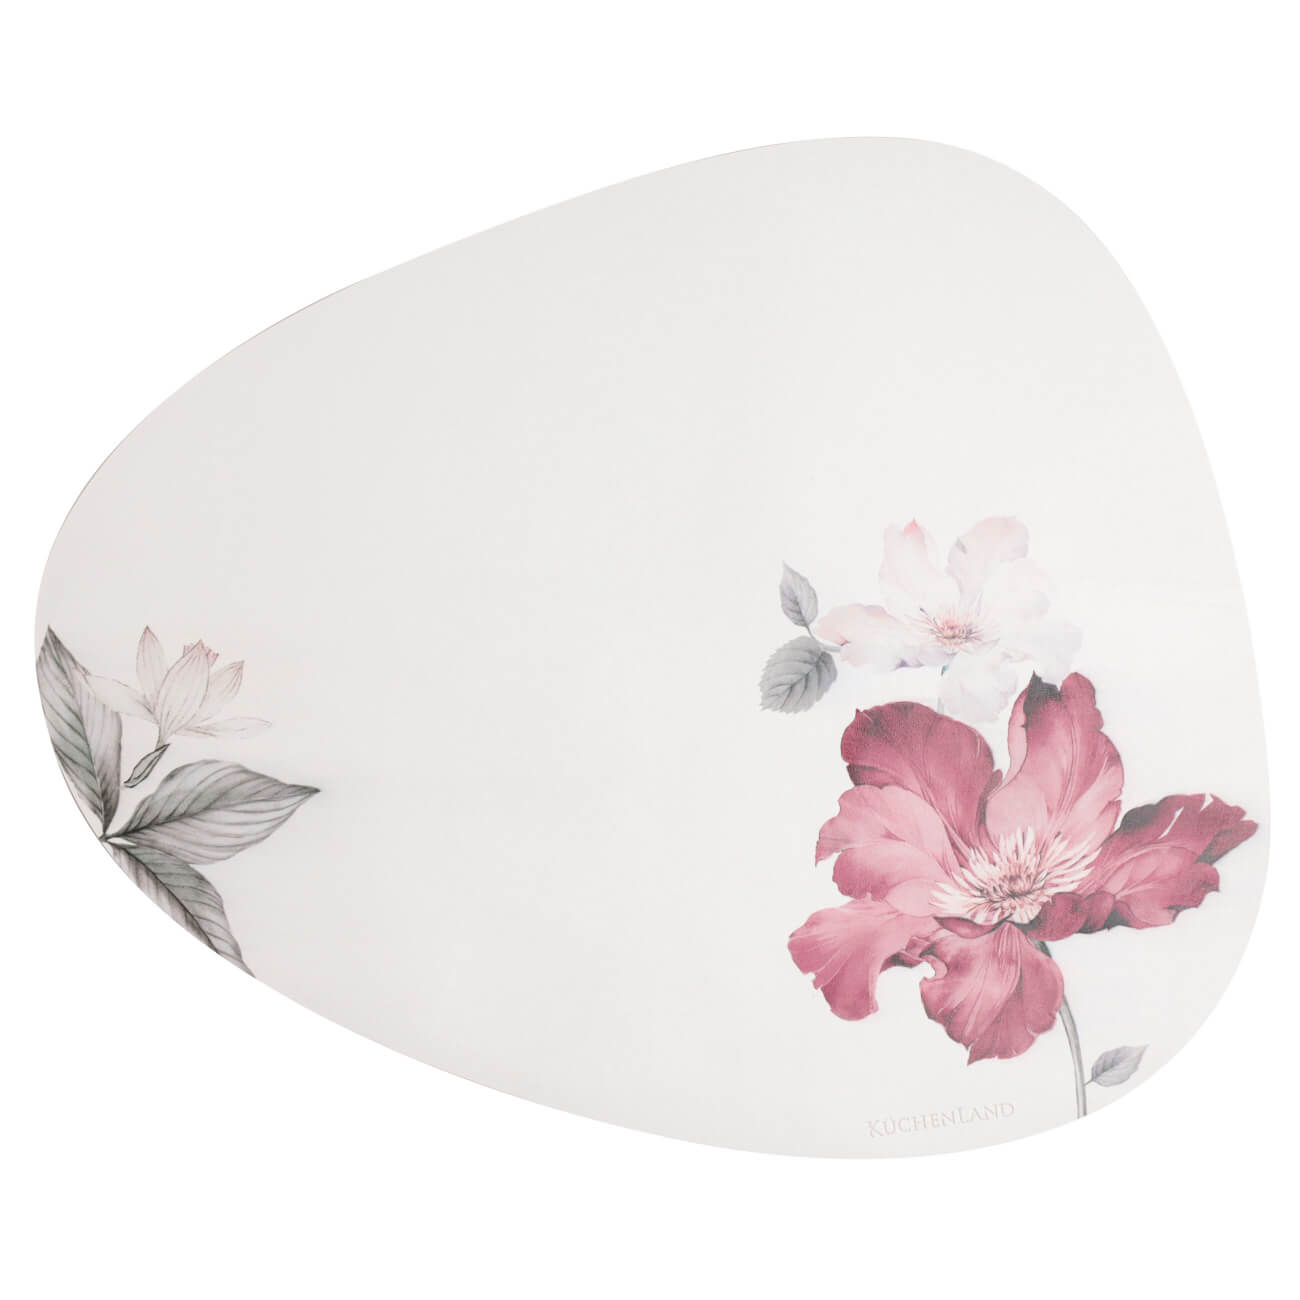 Салфетка под приборы, 37x45 см, ПВХ, фигурная, белая, Цветок и листья, Rock print цветок сальвия белая 0 1г agroni